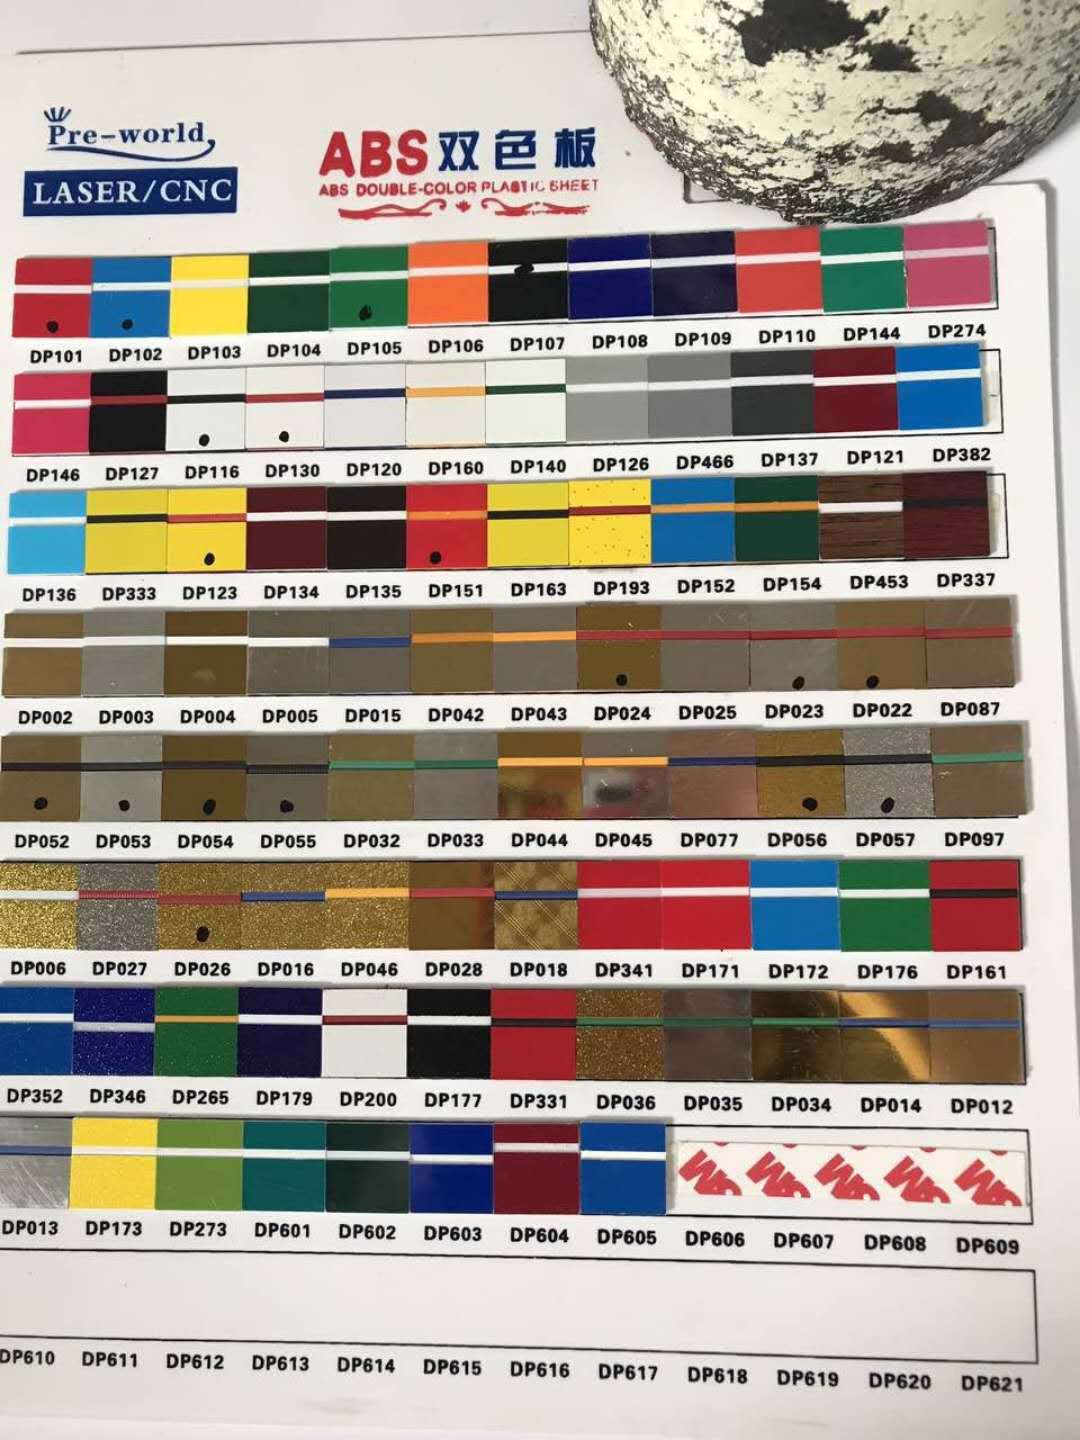 34厂家标牌双色板abs板 广告标牌塑料板 abs漏板 双色板